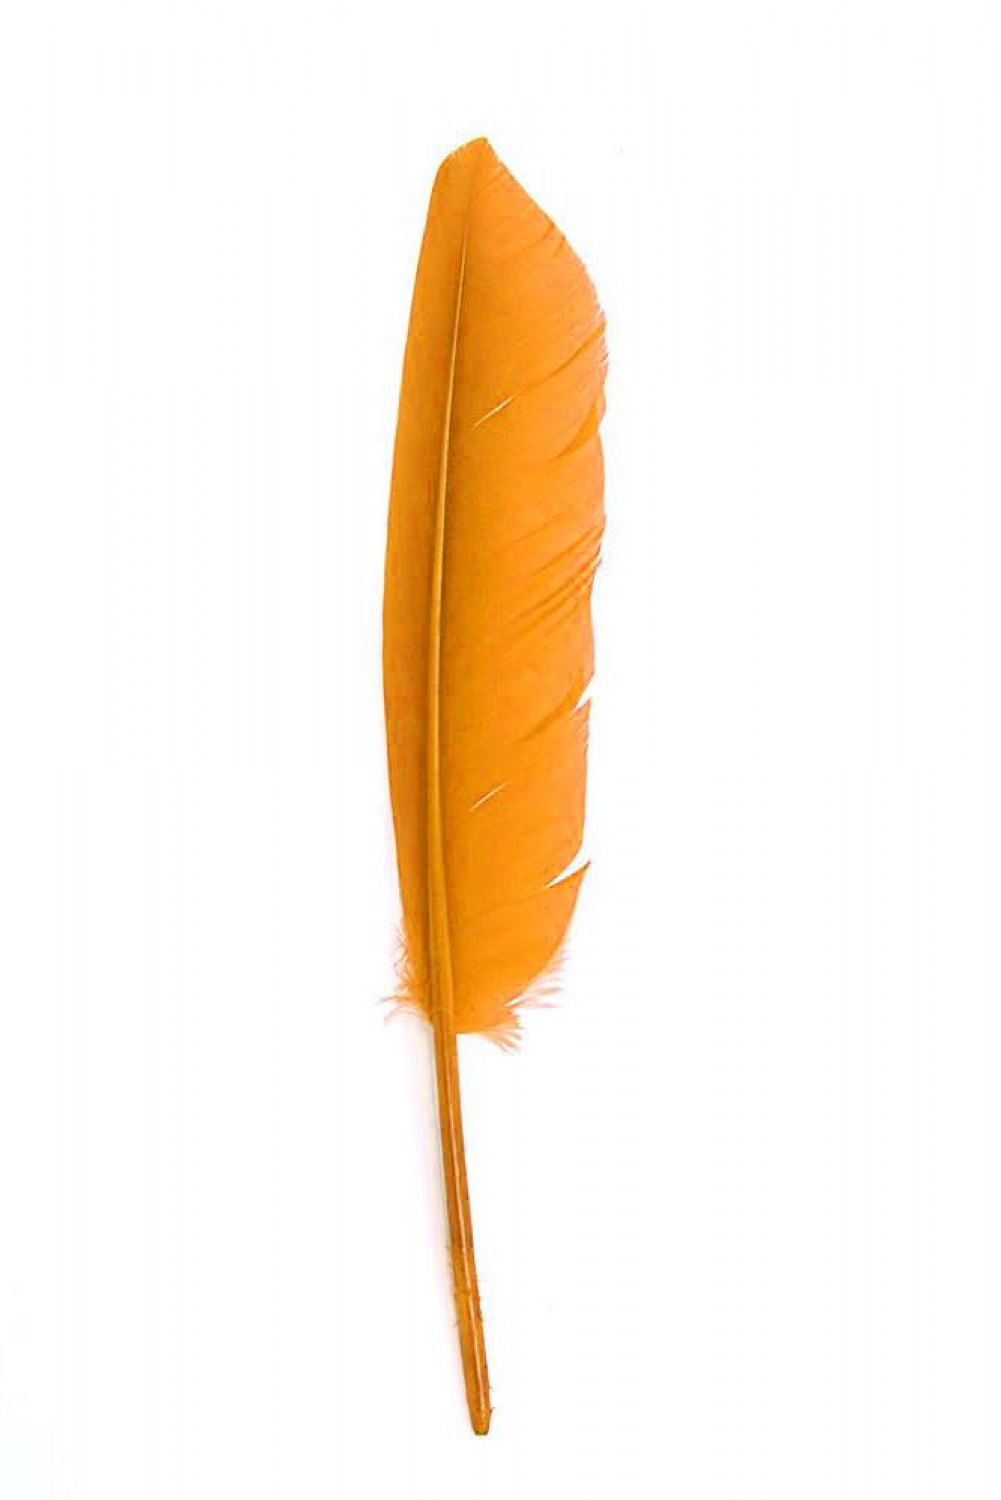 Gänsefeder 22-27cm, orange, rechts, 10er Pack